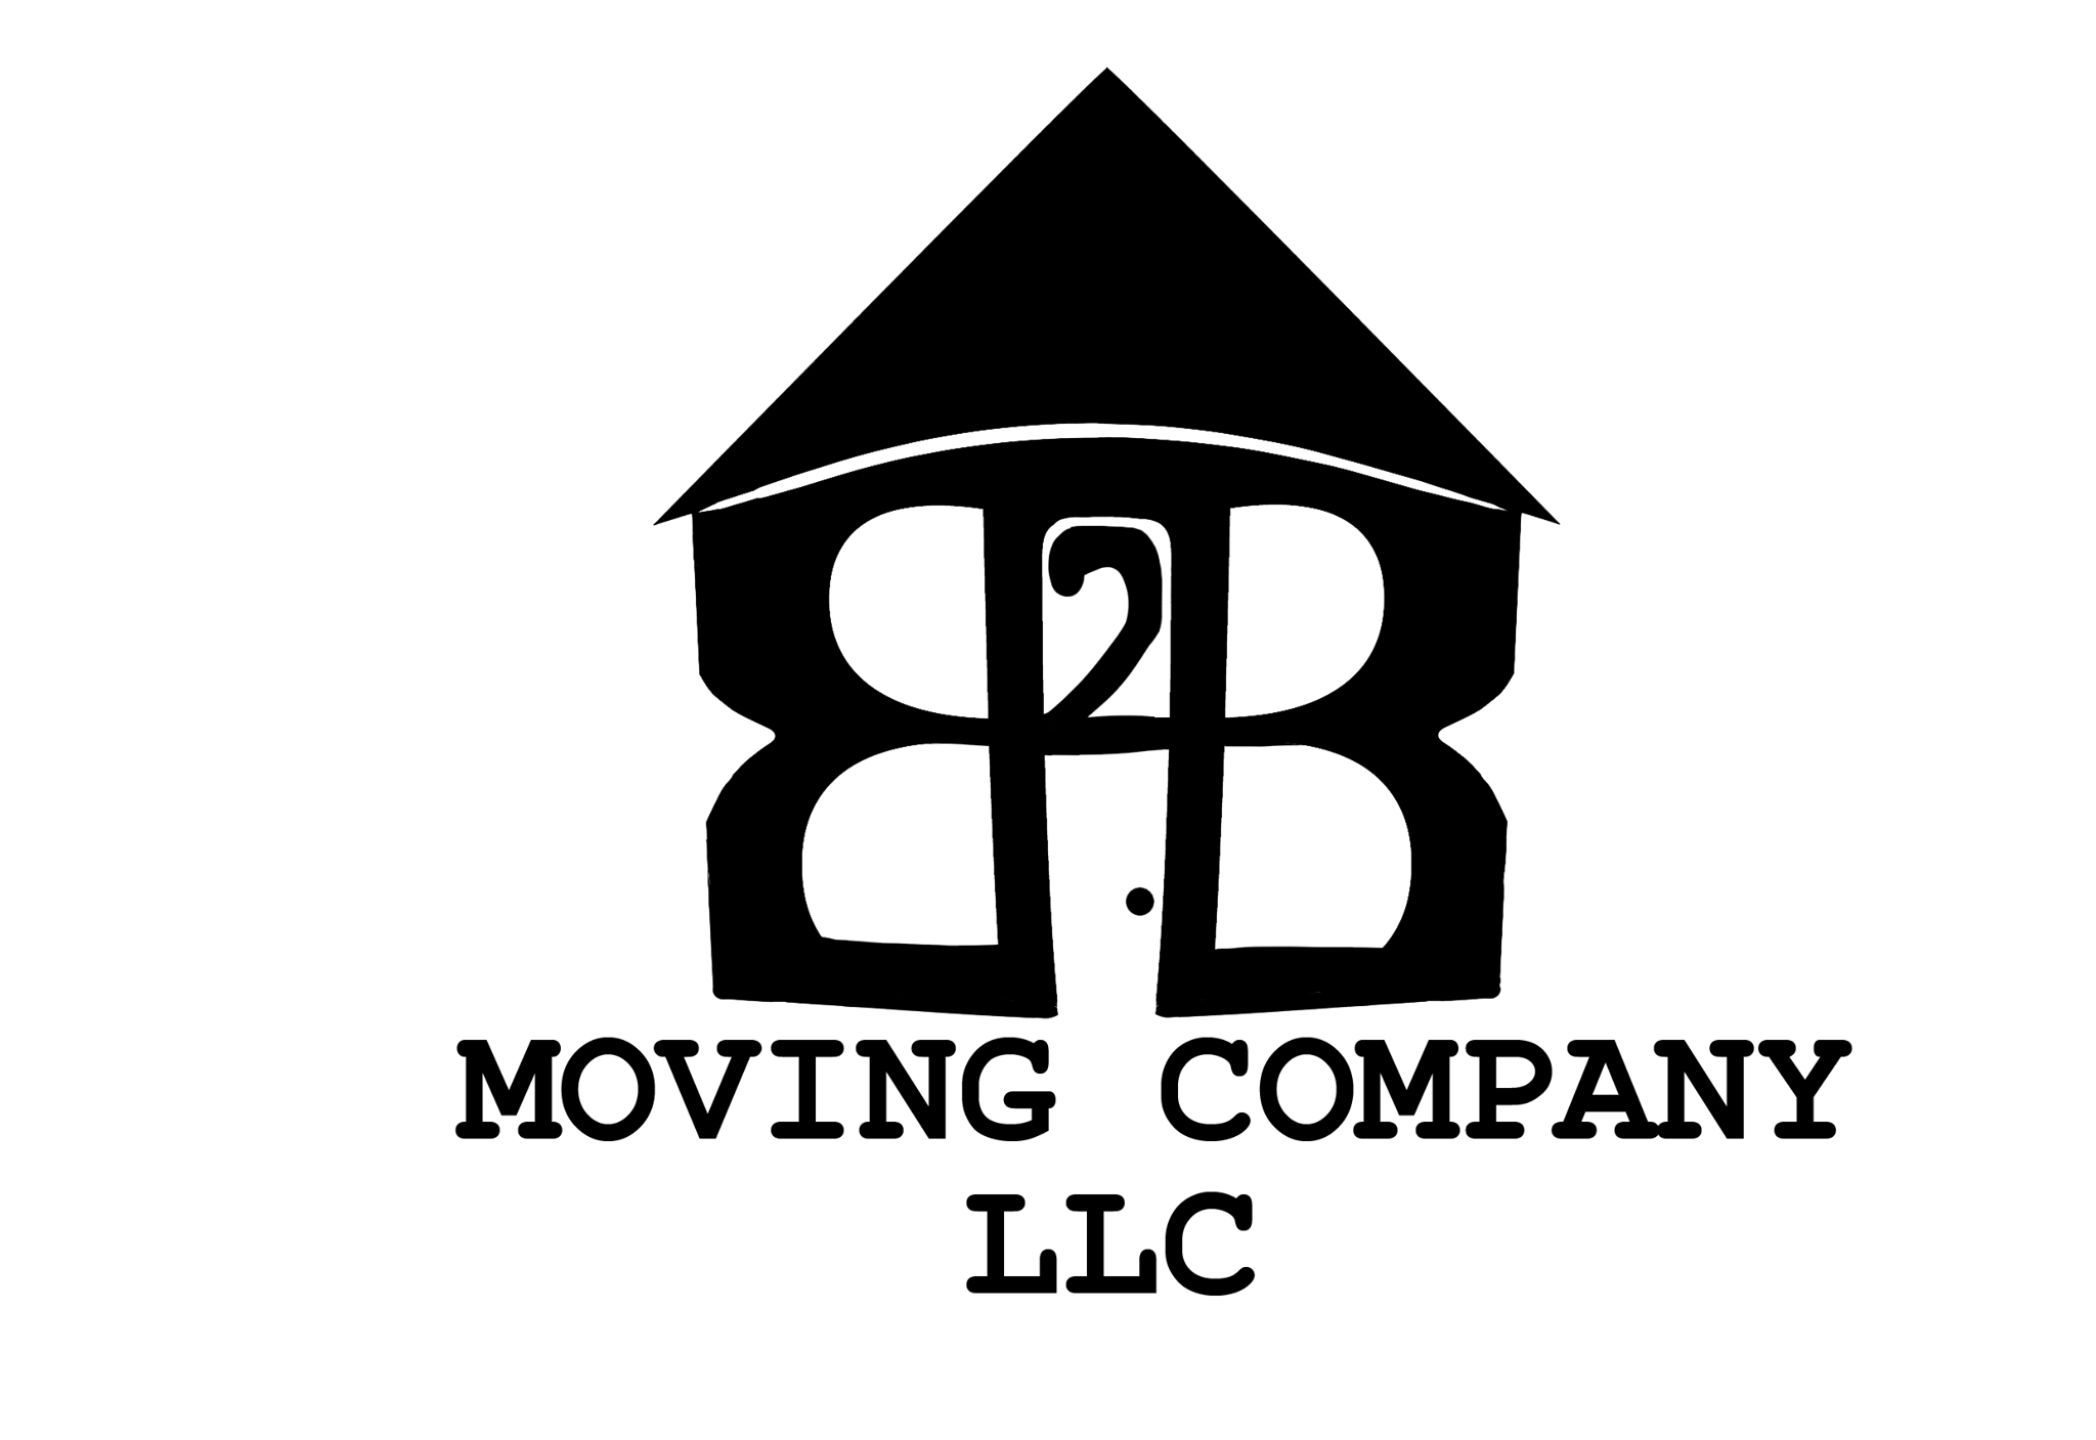 B2B Moving Company, LLC. Logo